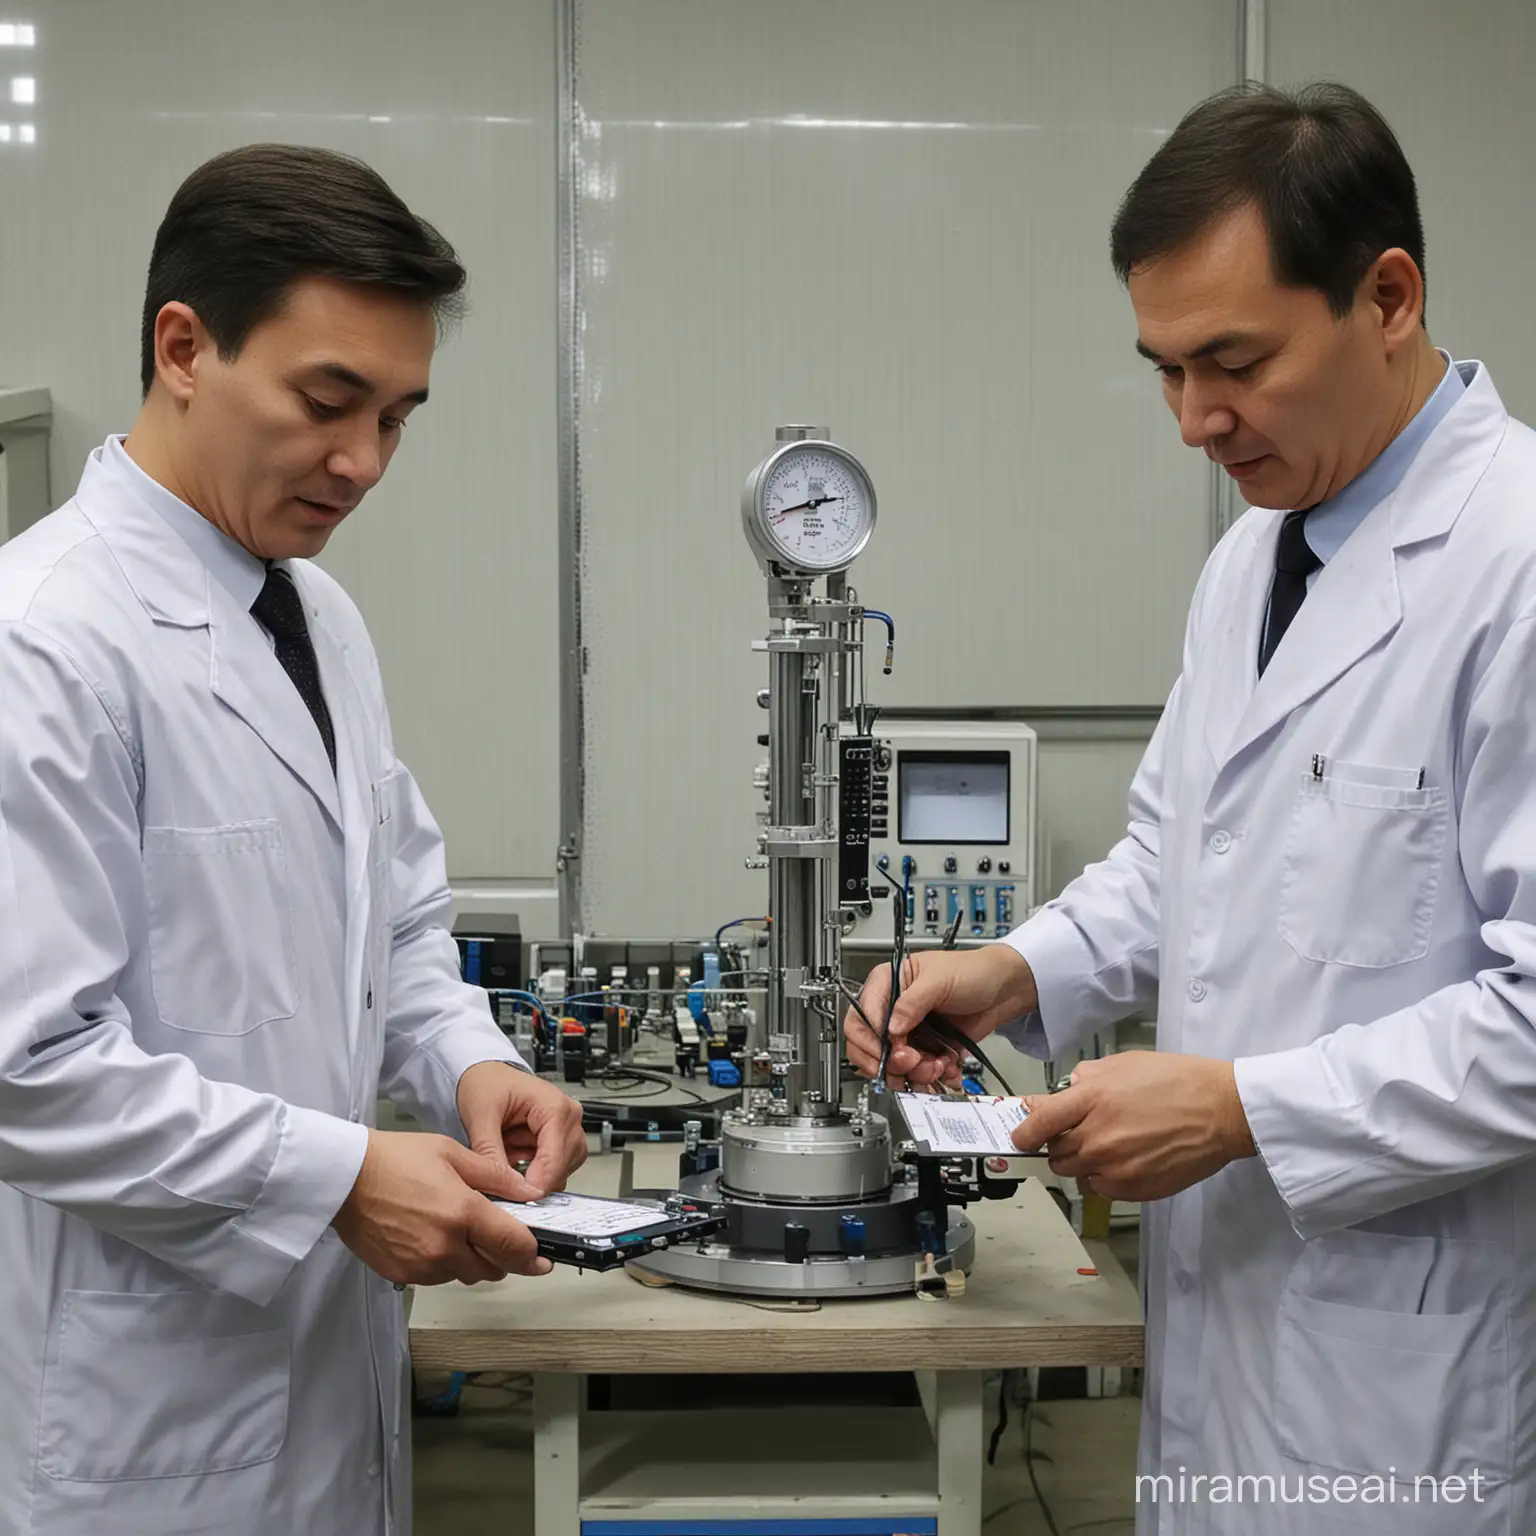 Производство в казахстане по созданию контрольно-измерительно техники,манометров
На изображение работают люди по созданию